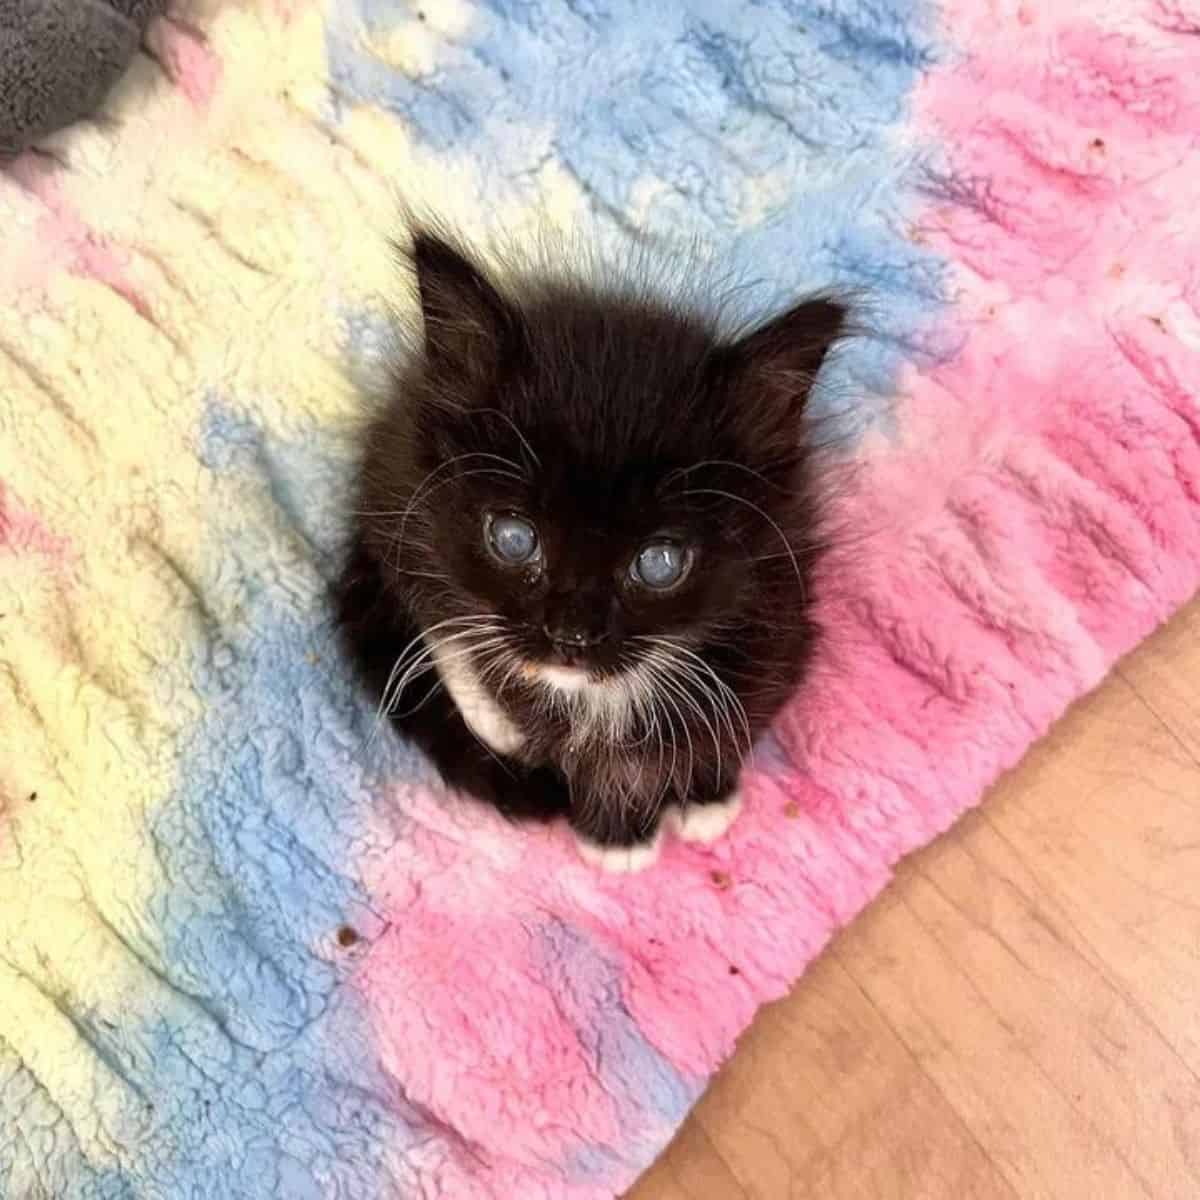 photo of black kitten sitting